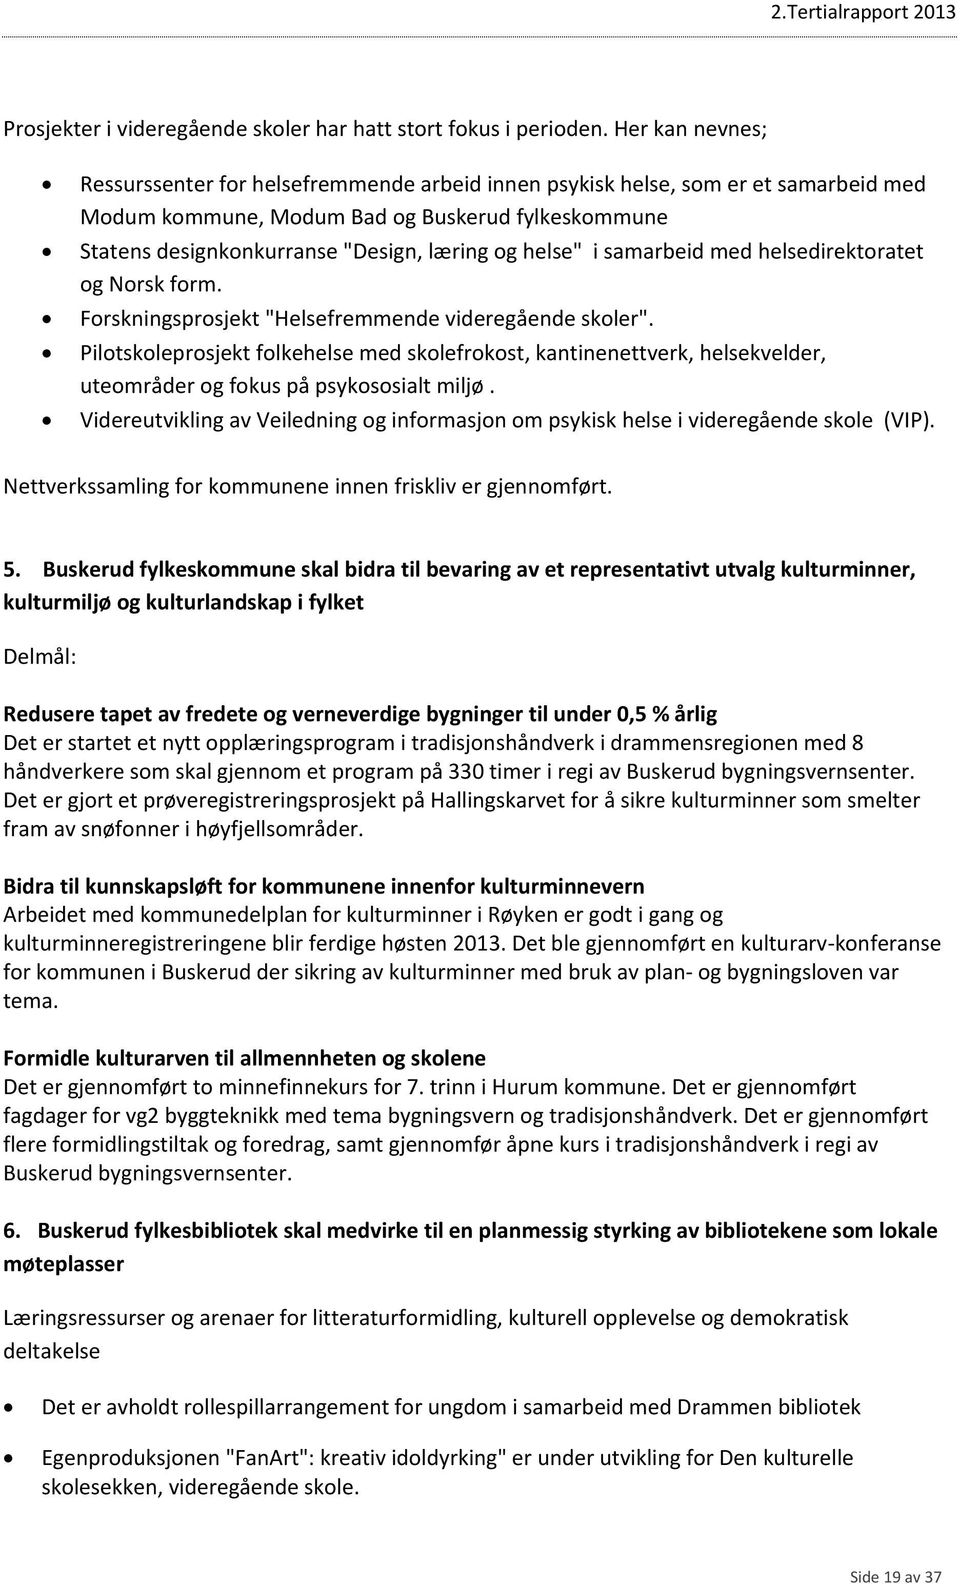 helse" i samarbeid med helsedirektoratet og Norsk form. Forskningsprosjekt "Helsefremmende videregående skoler".